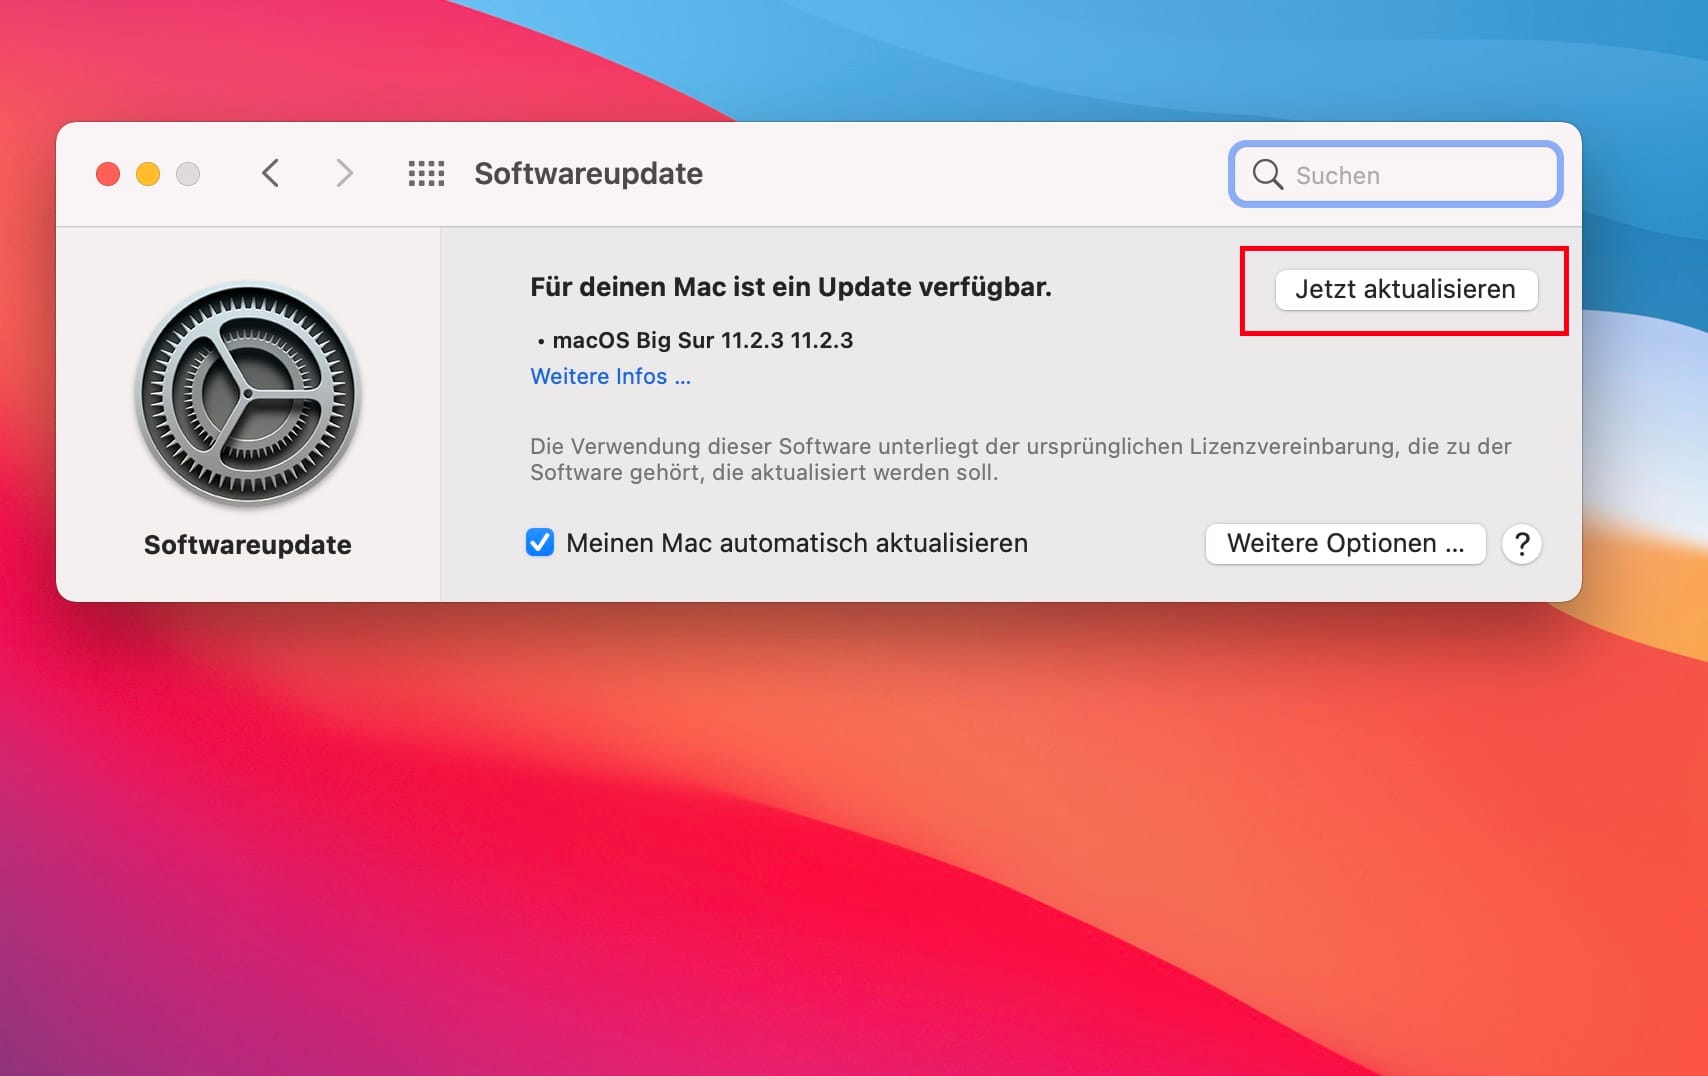 Nun öffnet sich das "Softwareupdate"-Fenster. Ist eine Aktualisierung für macOS oder ein Apple-Programm verfügbar, wird dies hier angezeigt. In diesem Fall wartet gerade ein Update für das Betriebssystem auf Anwendung. Ein Klick auf "Jetzt aktualisieren" startet das Update.